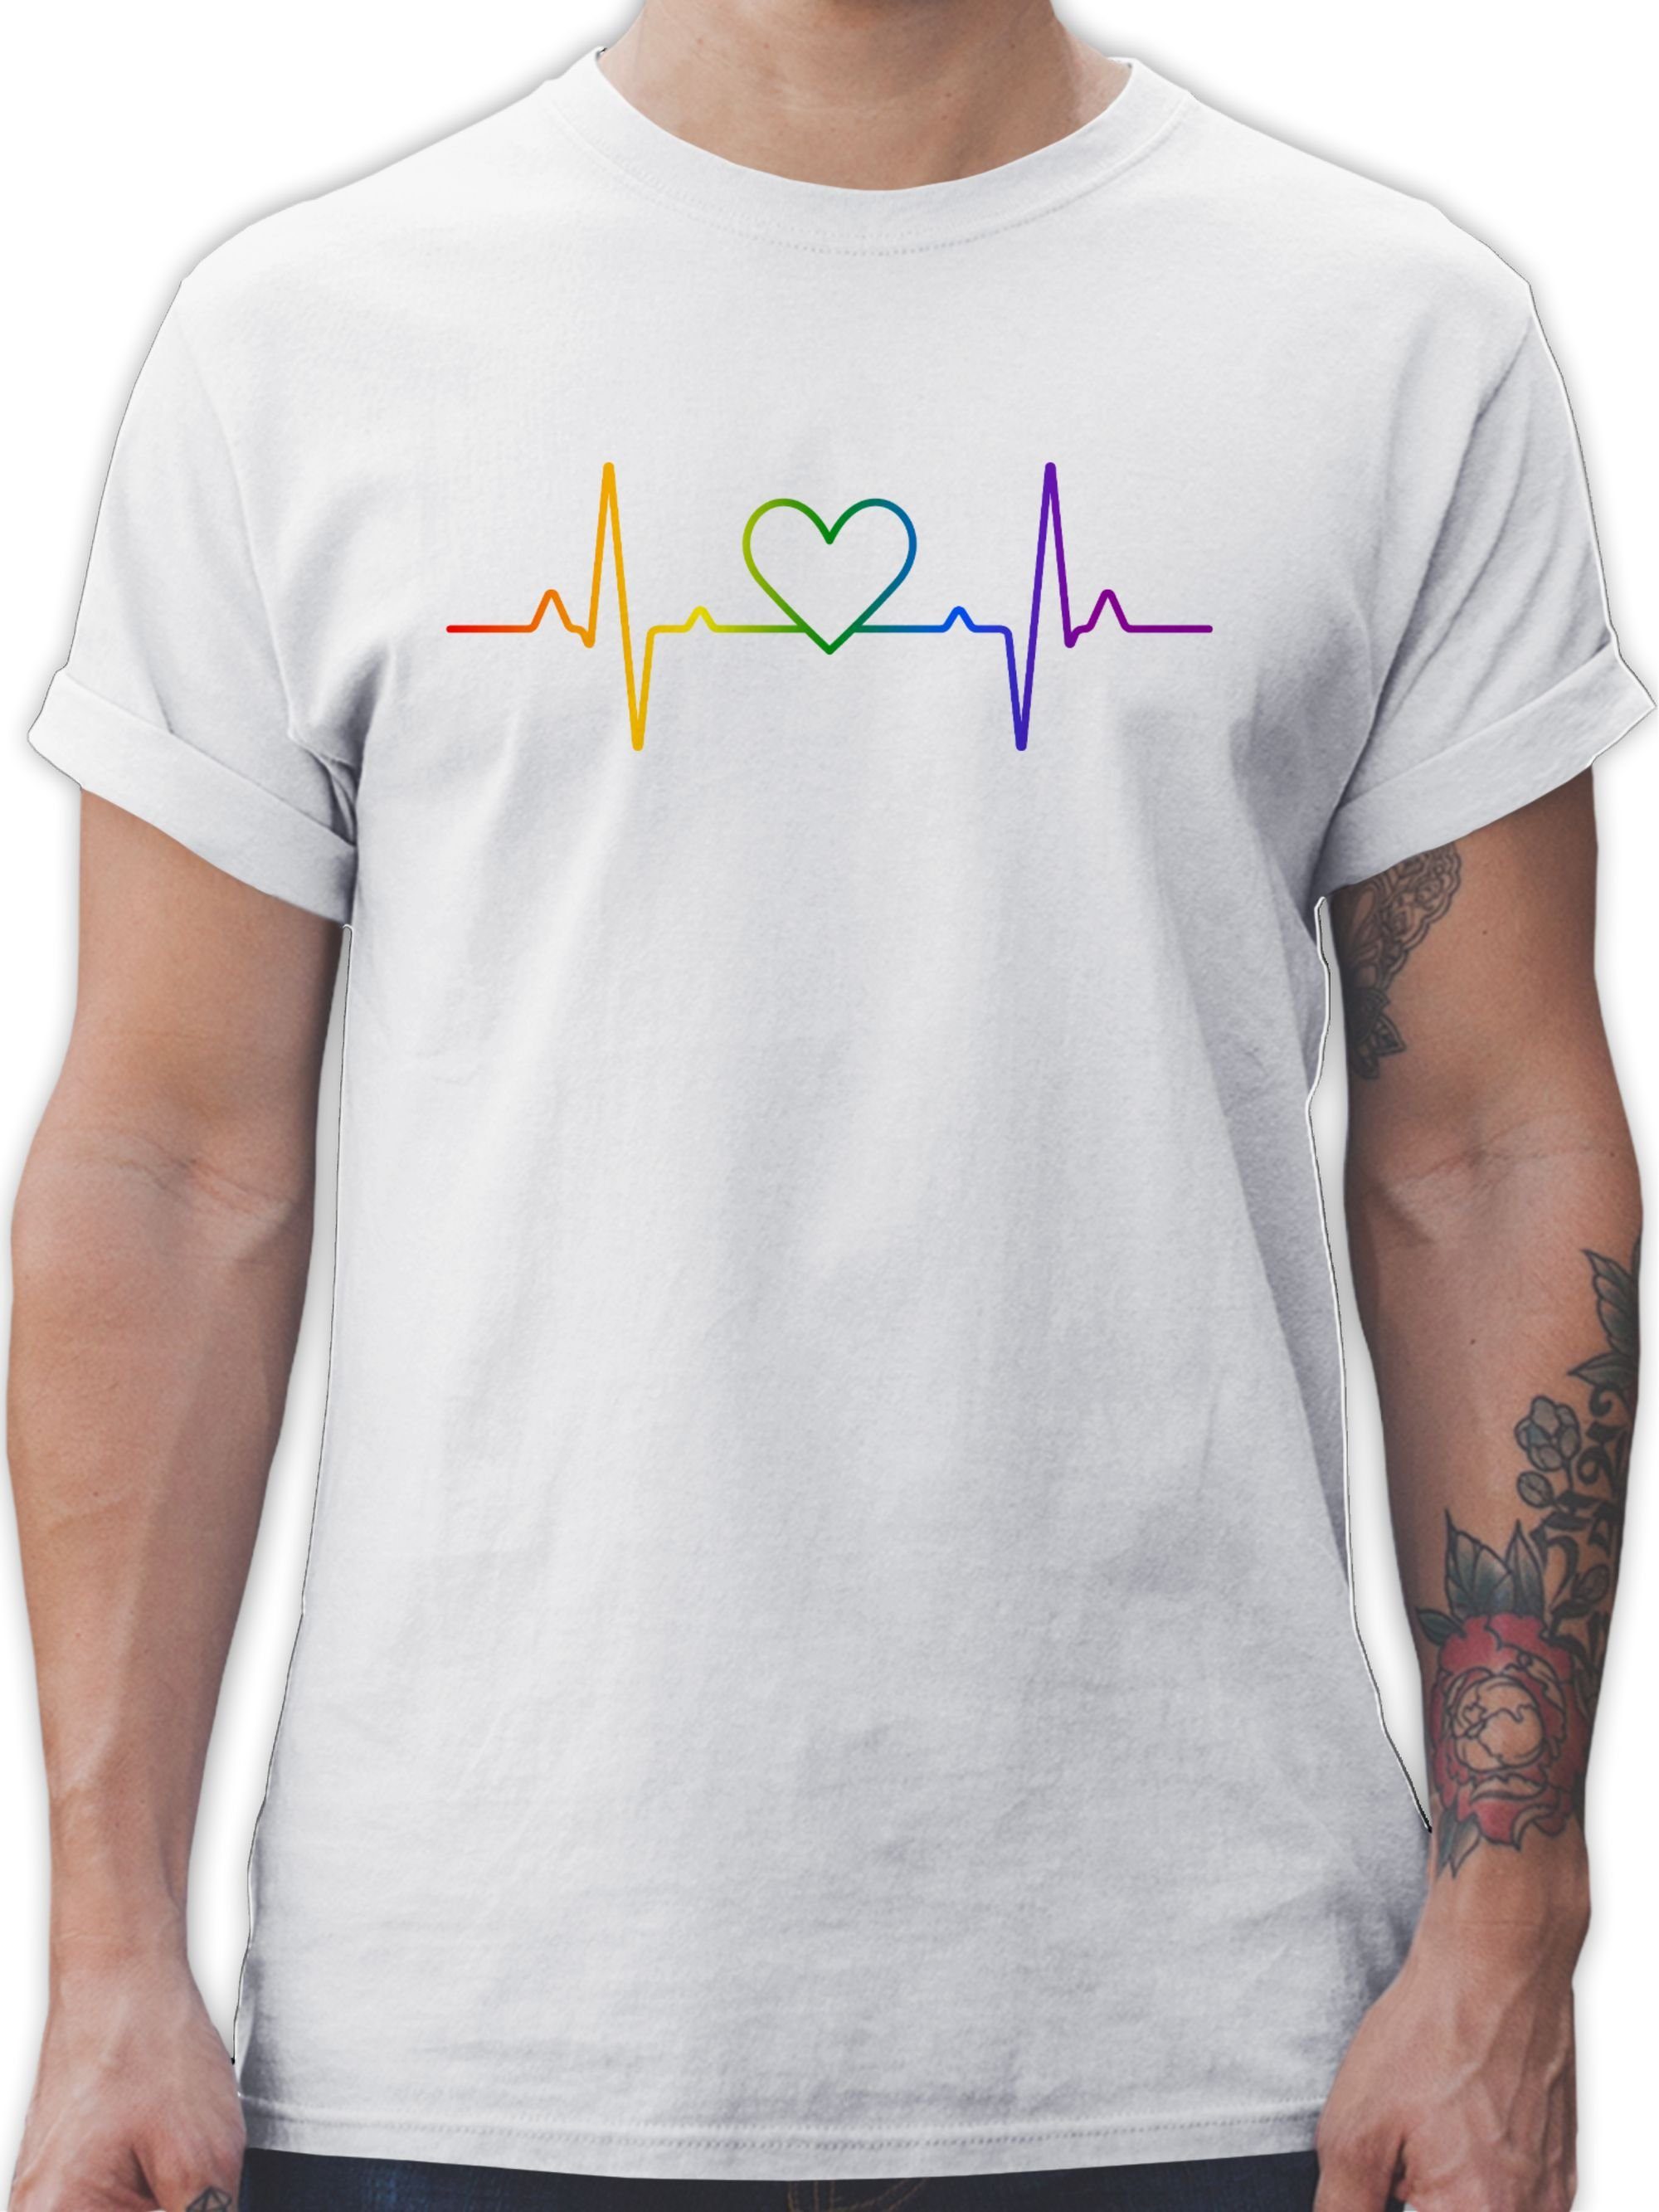 01 T-Shirt Weiß LGBT Kleidung Pride Herzschlag Shirtracer Regenbogen